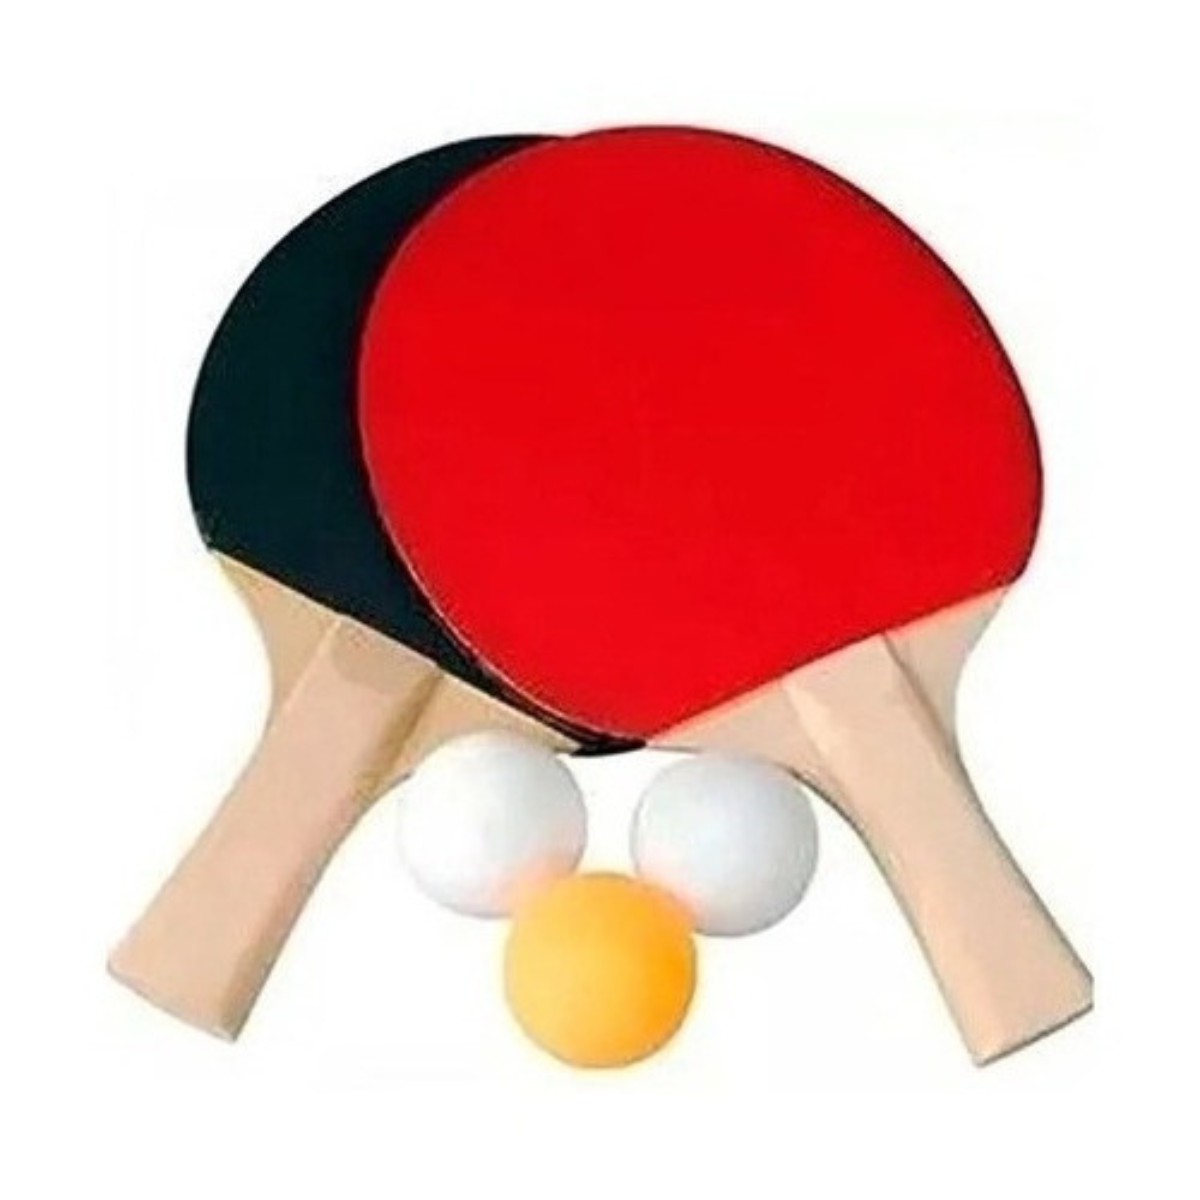 Kit ping pong - esporte 5 peças: 2 raquetes 3 bolinhas - Lojas Lares